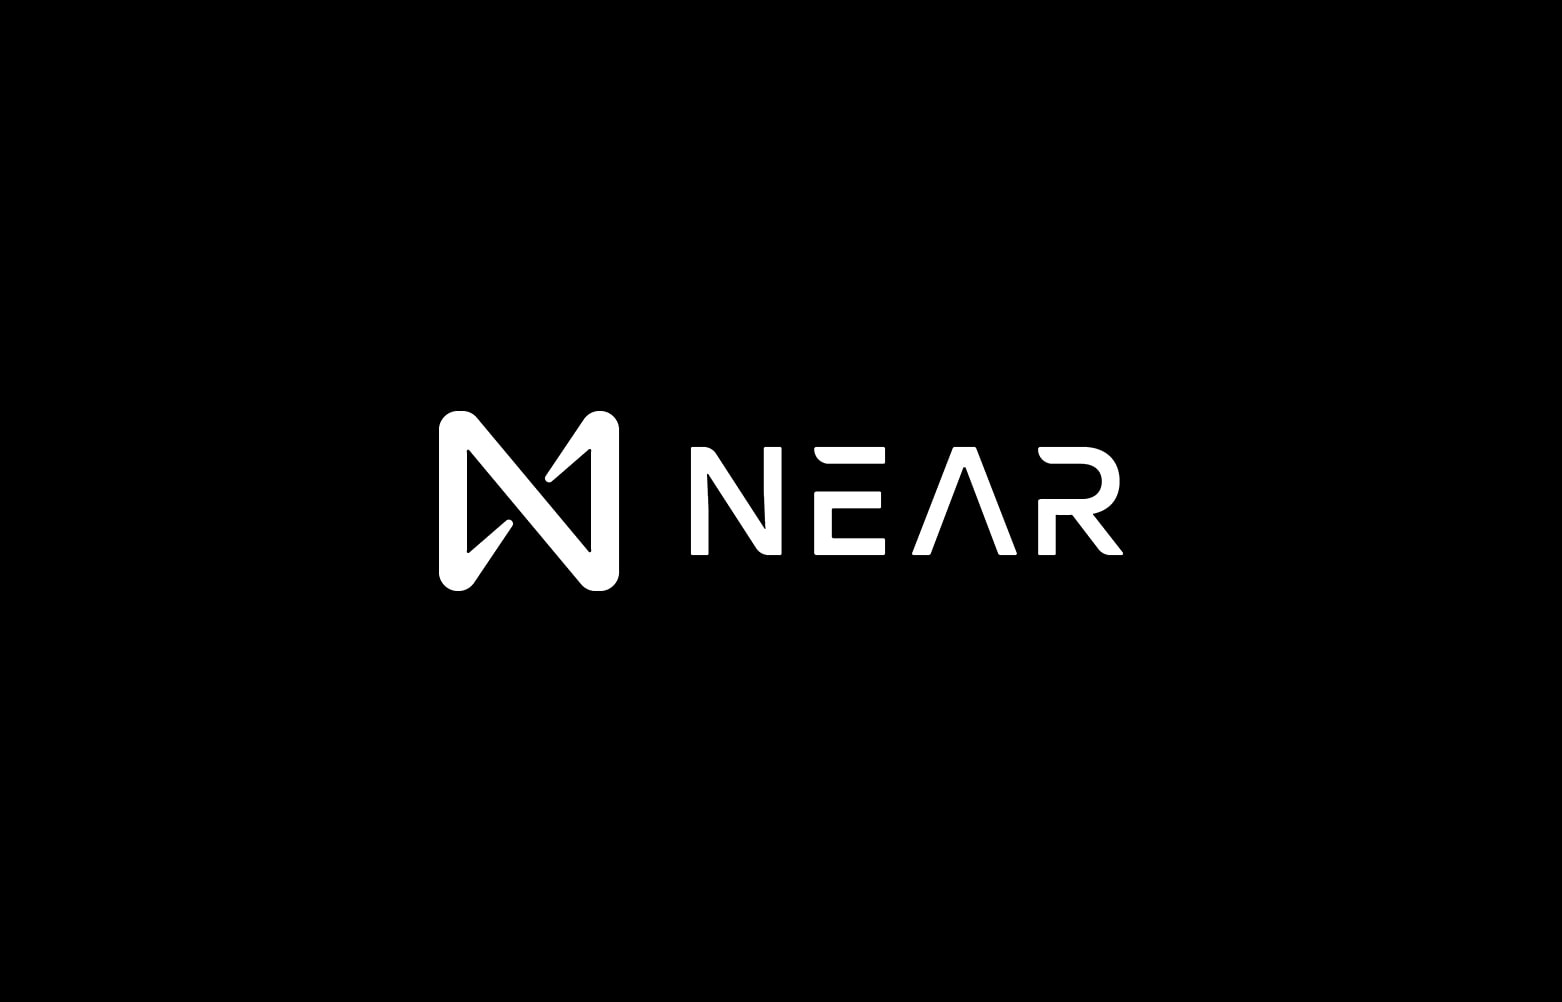 NEAR запускает Proof-of-Stake 2.0 для разблокировки вознаграждений за стейкинг. Заглавный коллаж новости.